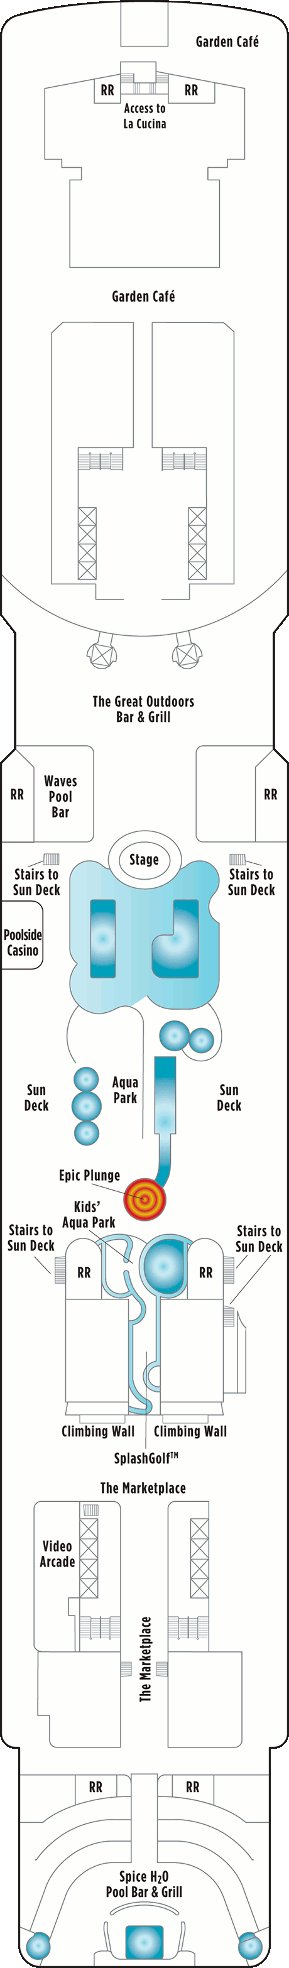 Norwegian Epic Deck 15 Deck Plan